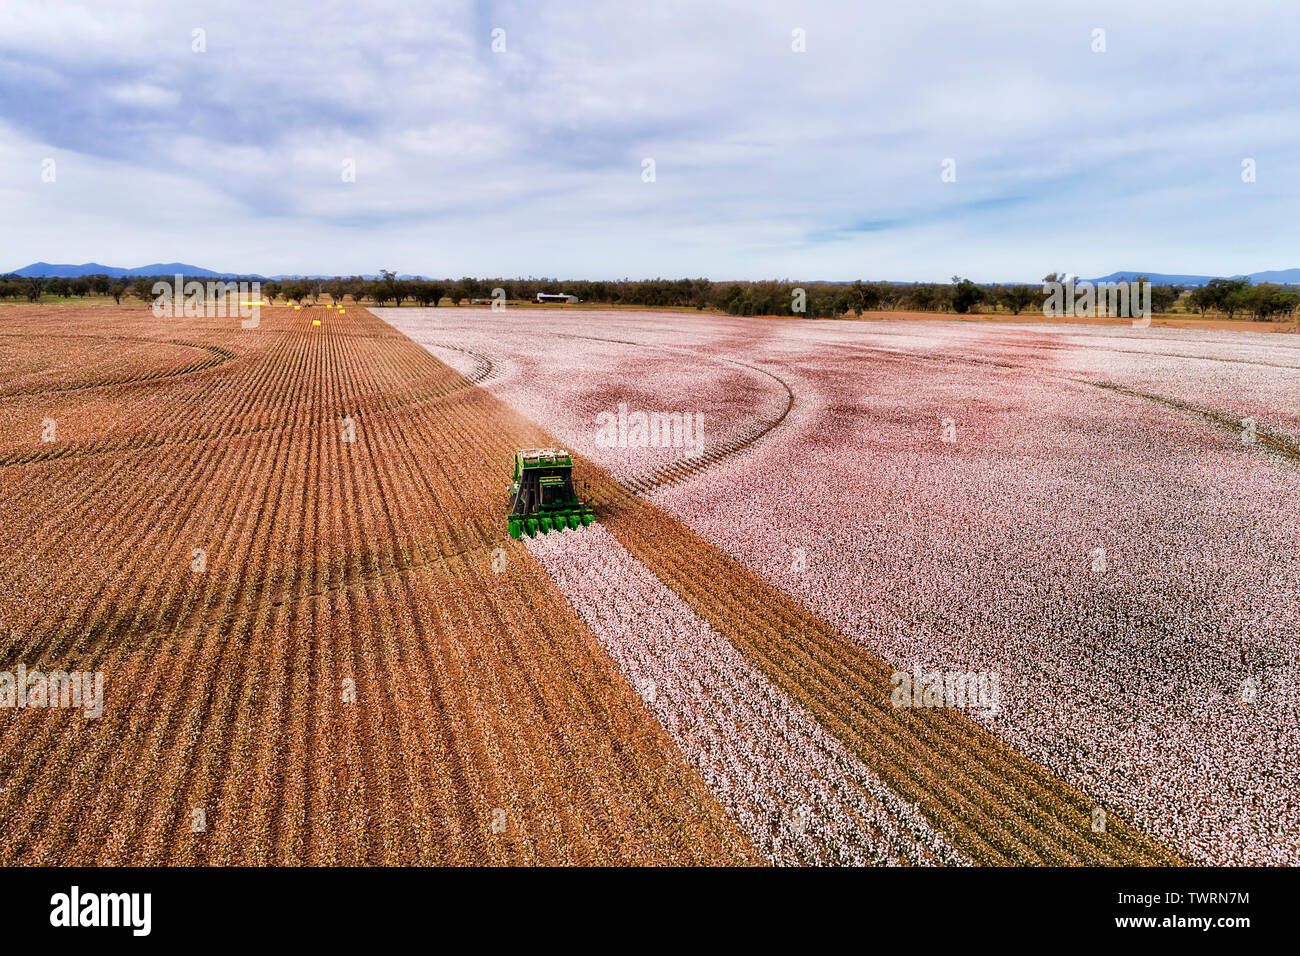 Télévision Les champs agricoles agricoles cultivées de l'Australie en vertu des plants de coton au cours de saison de récolte avec la moissonneuse-batteuse tracteur agricole blanc neige boite coton Banque D'Images